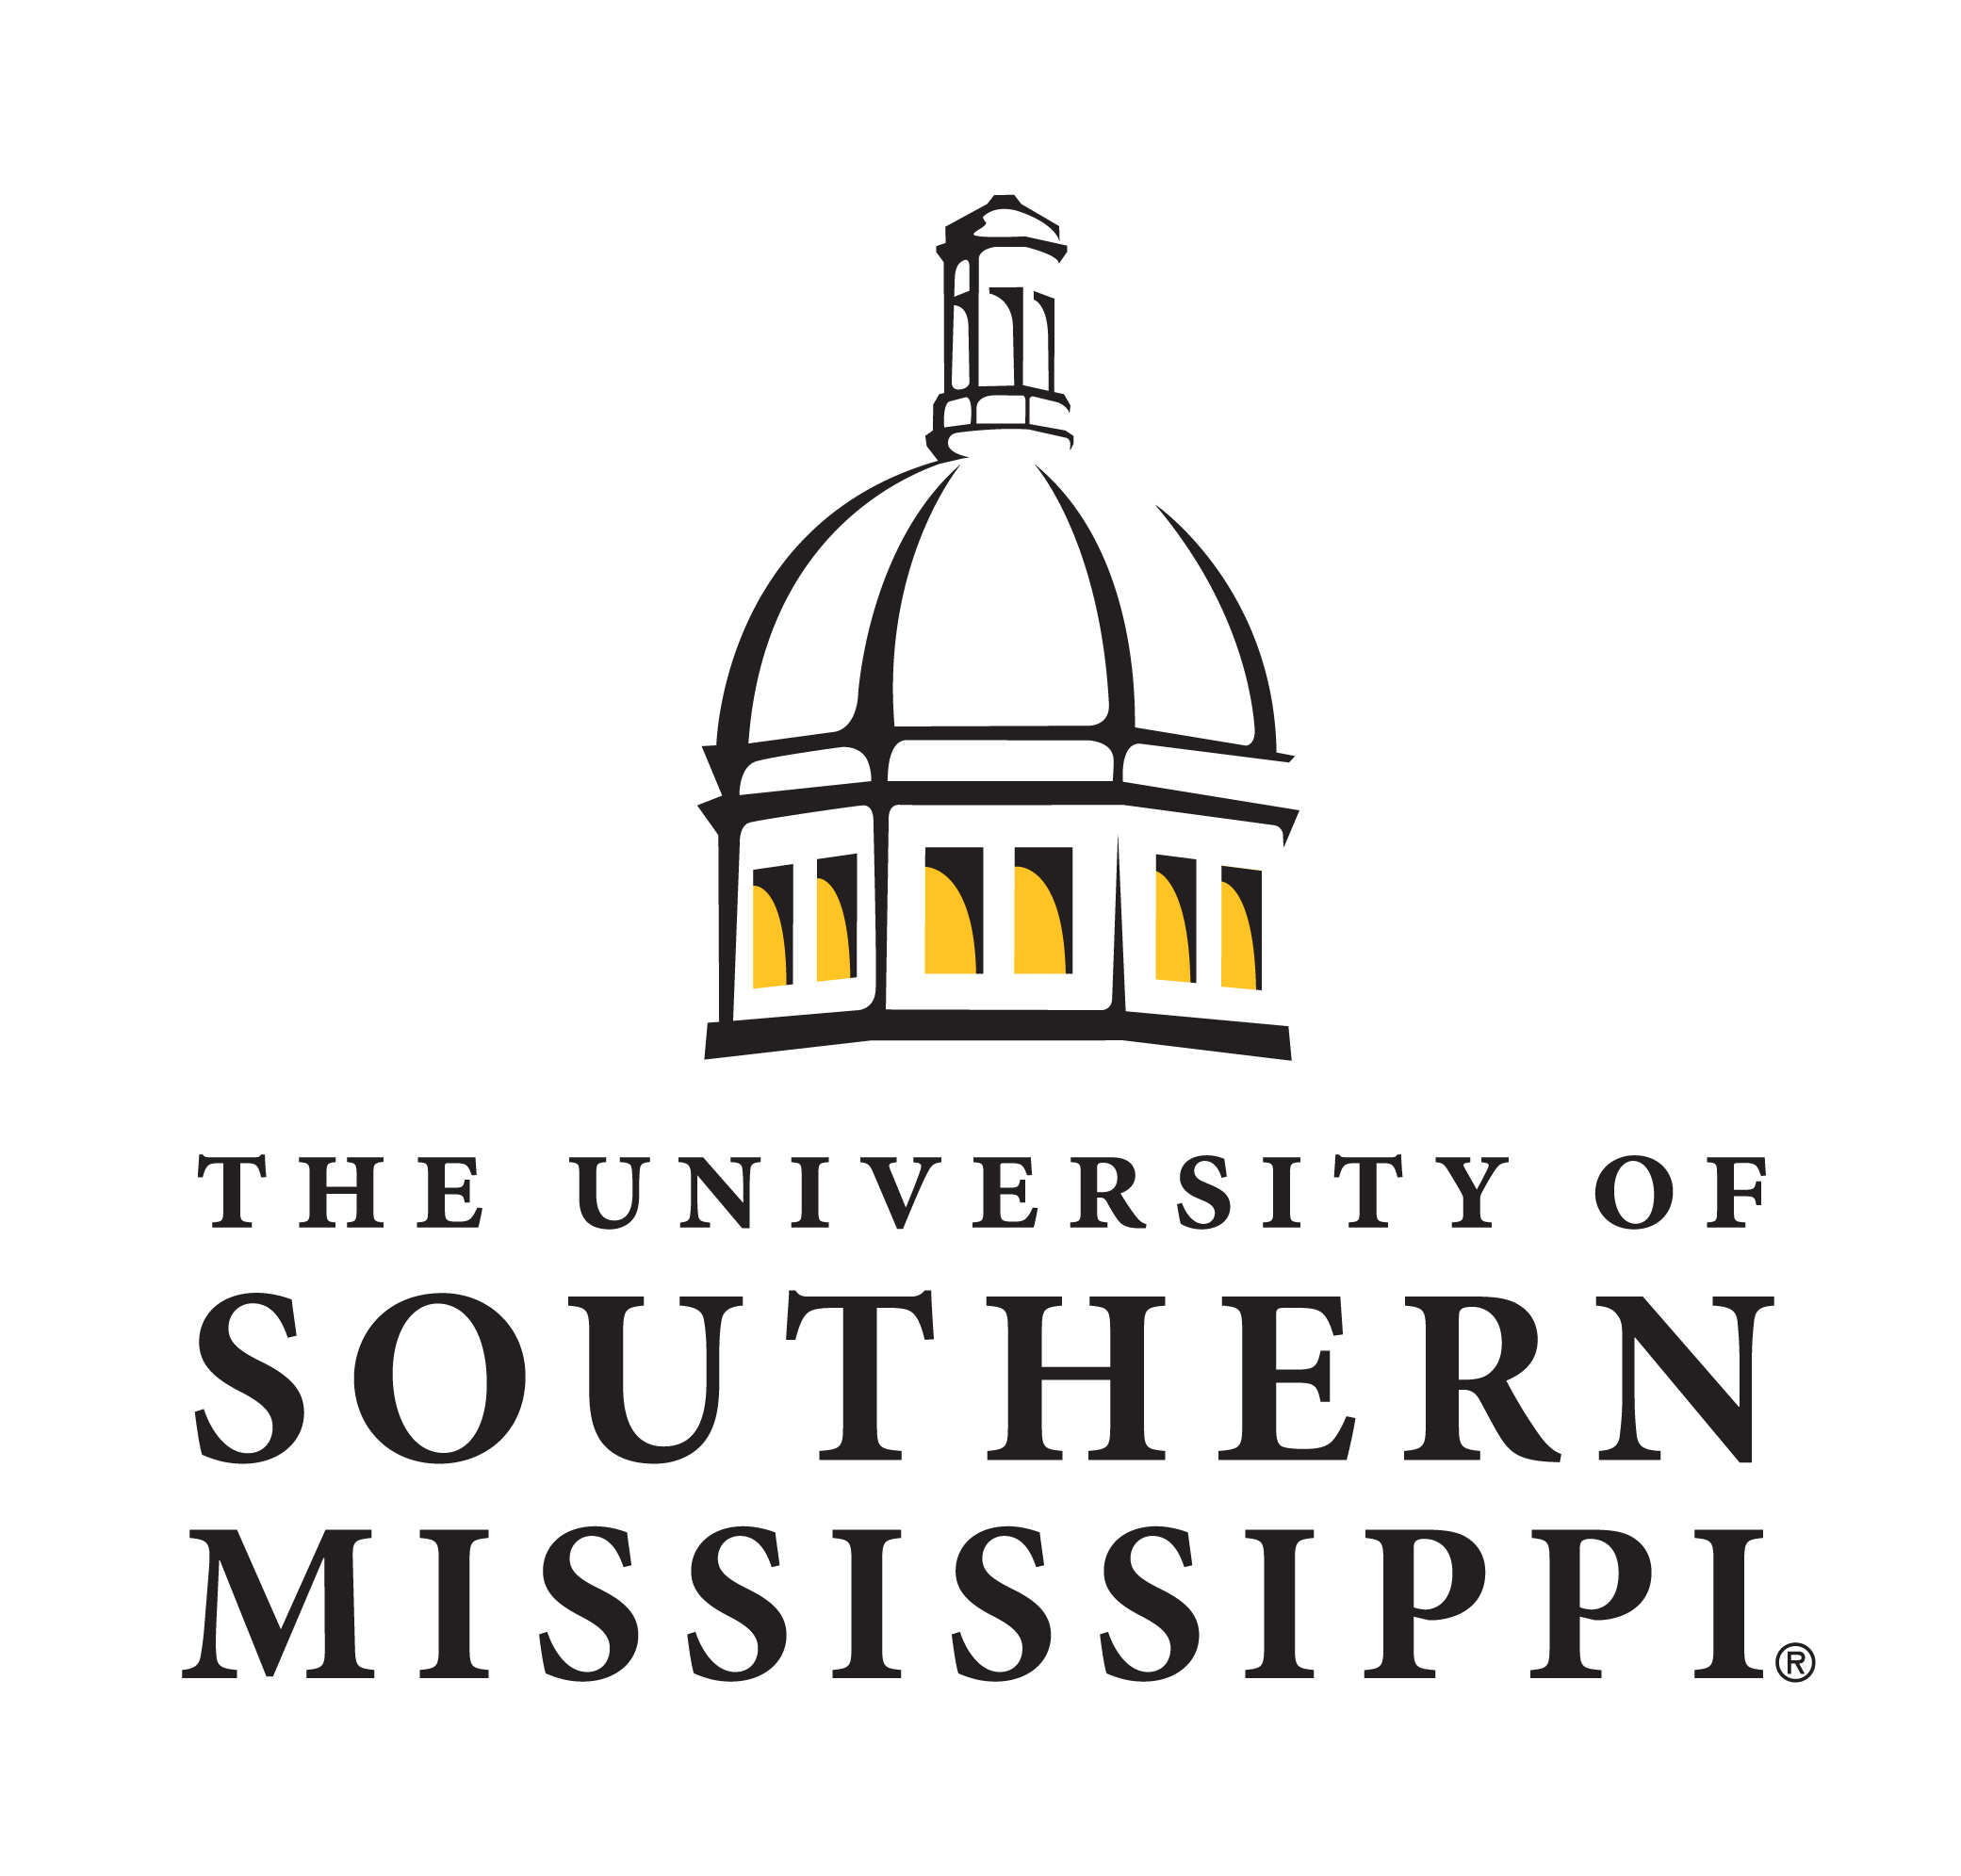 University of Southern Mississippi. Southern University logo. University of Mississippi logo. University of Southern Mississippi graduateprograms. Southern university